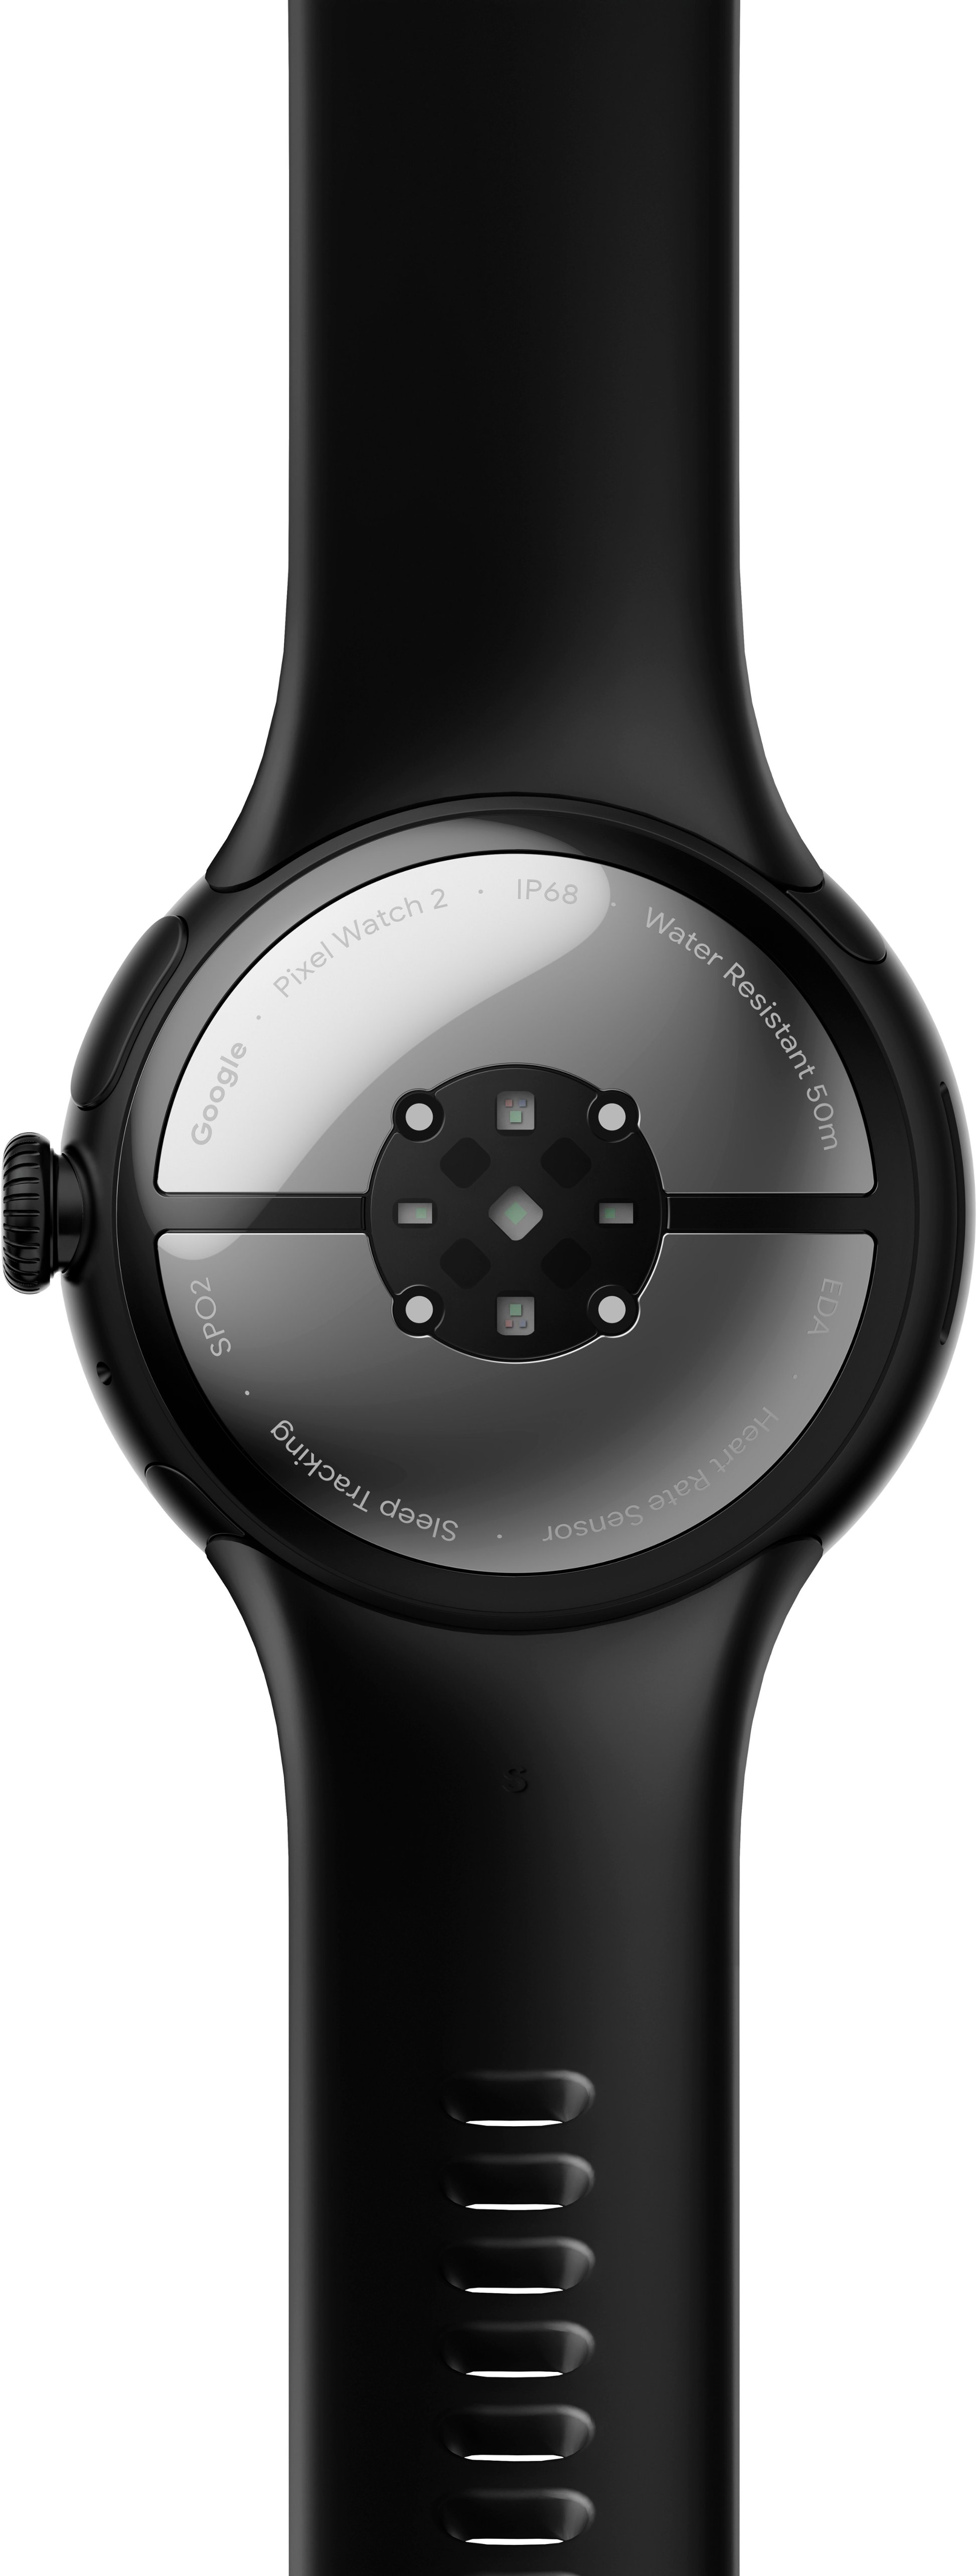 Achat reconditionné Google Pixel Watch 2 41 mm argent poli